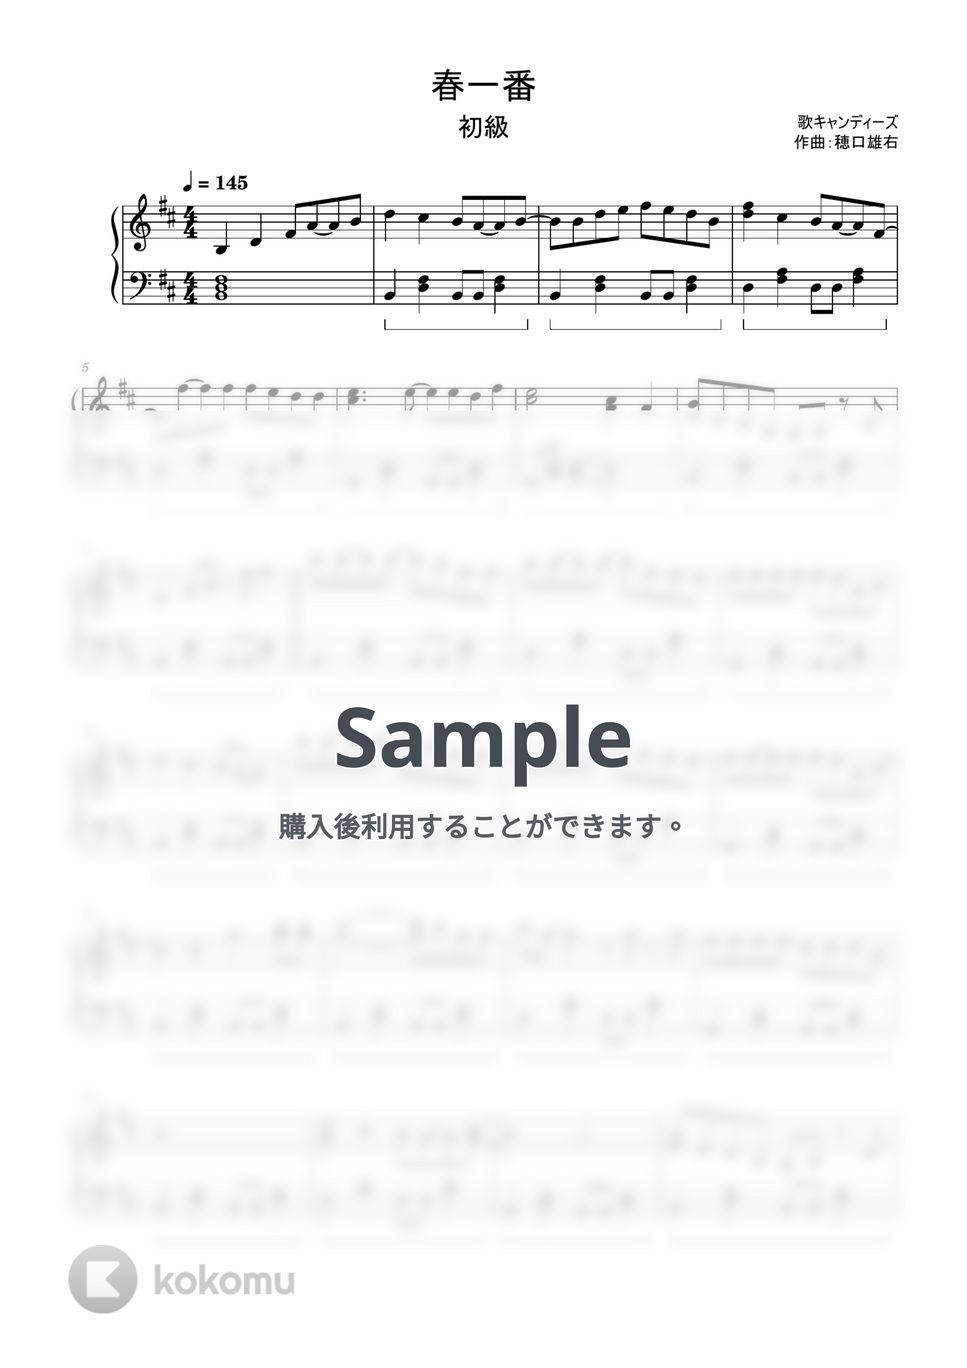 キャンディーズ - 春一番 (簡単楽譜) by ピアノ塾